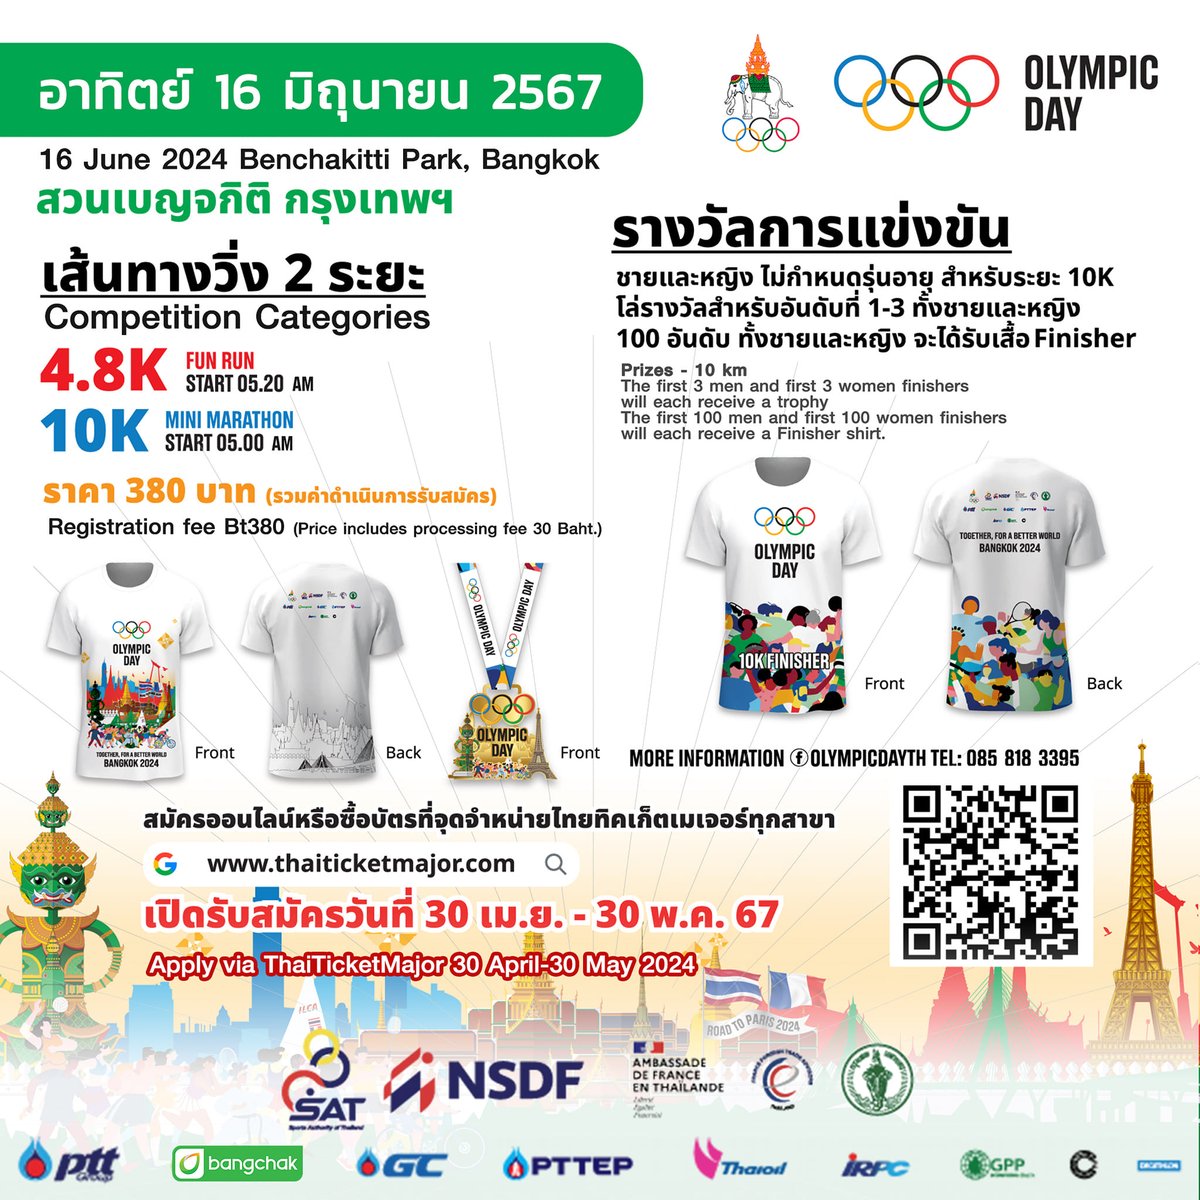 ✅ เปิดสมัครแล้ววันนี้! กับกิจกรรมเดิน-วิ่ง Olympic Day Walk-Run 2024 🗓 วันที่จัดกิจกรรม - วันอาทิตย์ที่ 16 มิถุนายน 2567 ⏱ เวลา 05.00 น. 🎫 บัตร 350 บาท คลิก >> bit.ly/3JGpA9B #OLYMPIC #OLYMPICDAY #OLYMPICDAY2024 #TogetherForABetterWorld